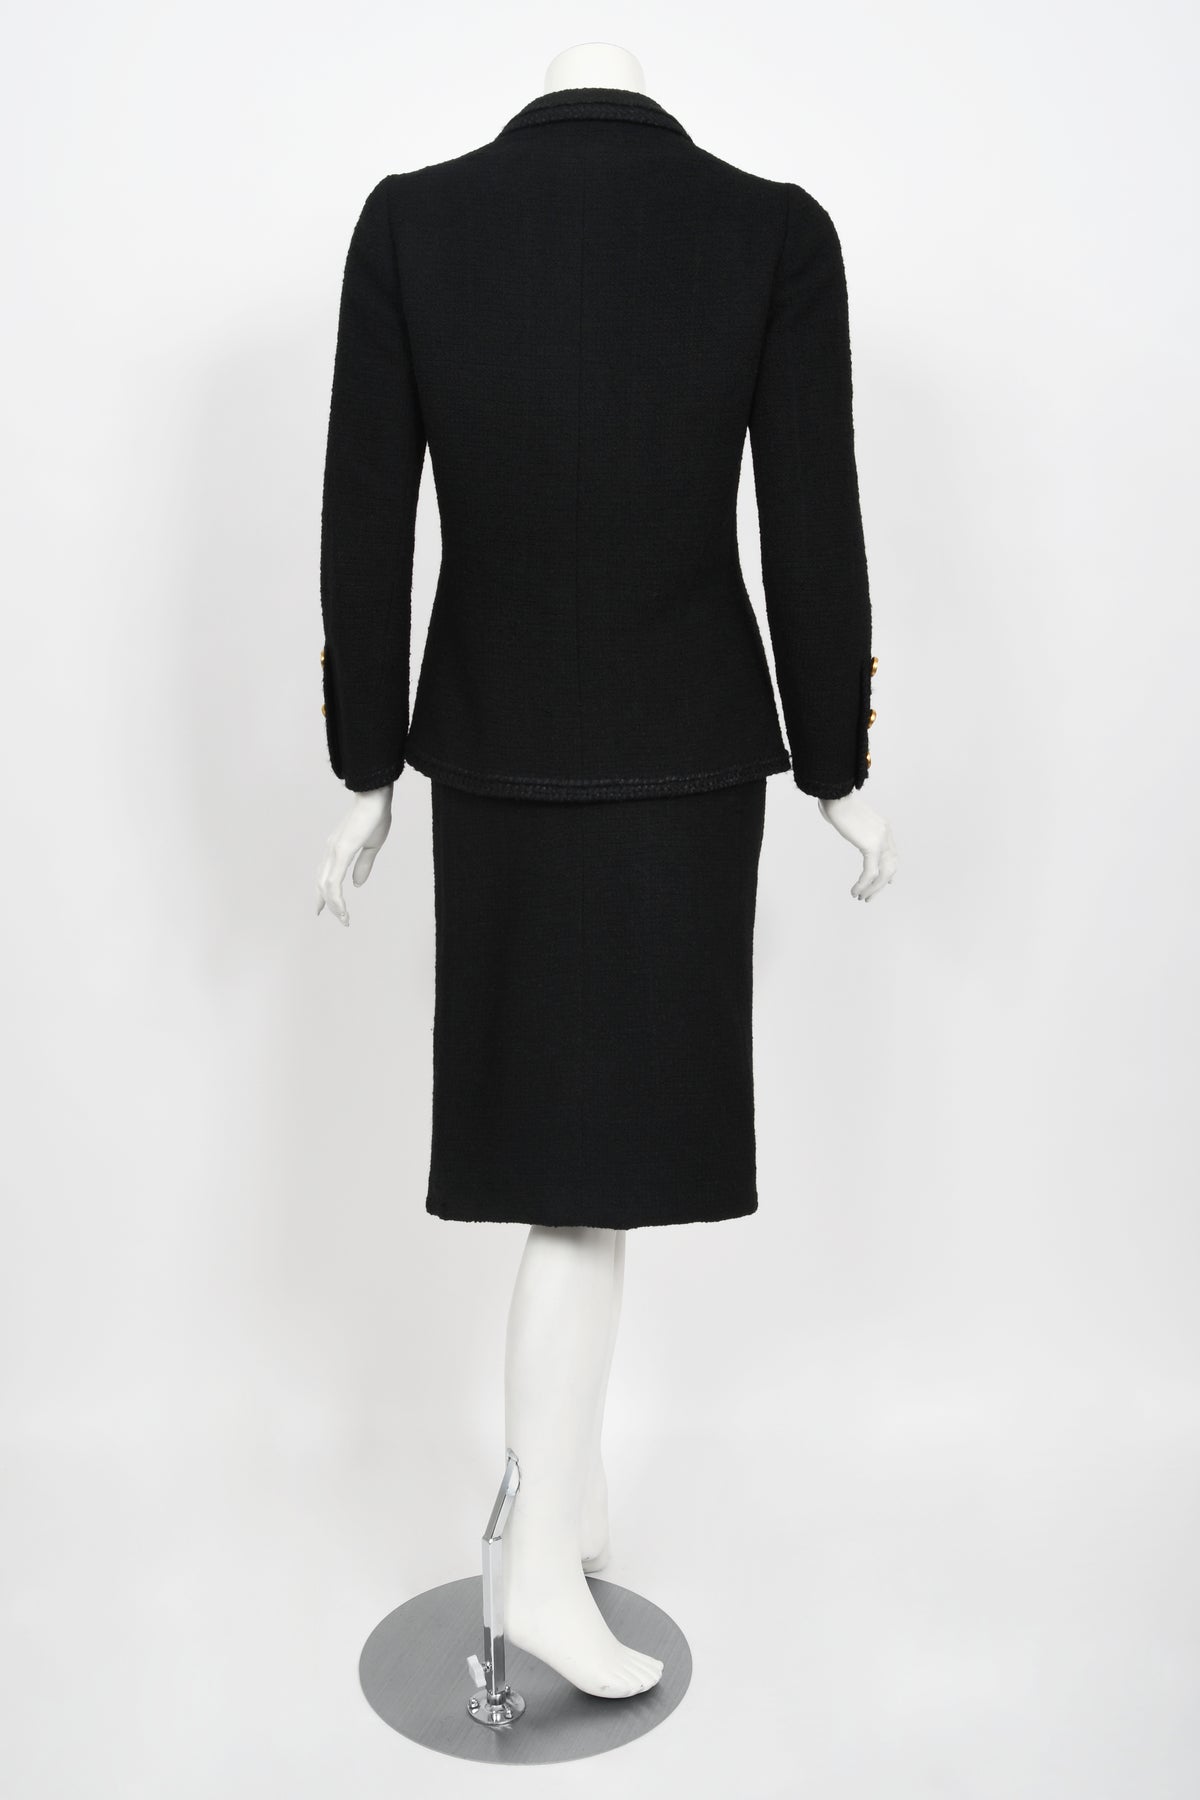 1973 Chanel Haute Couture Black Boucle Wool Logo Buttons Jacket Suit -  Timeless Vixen